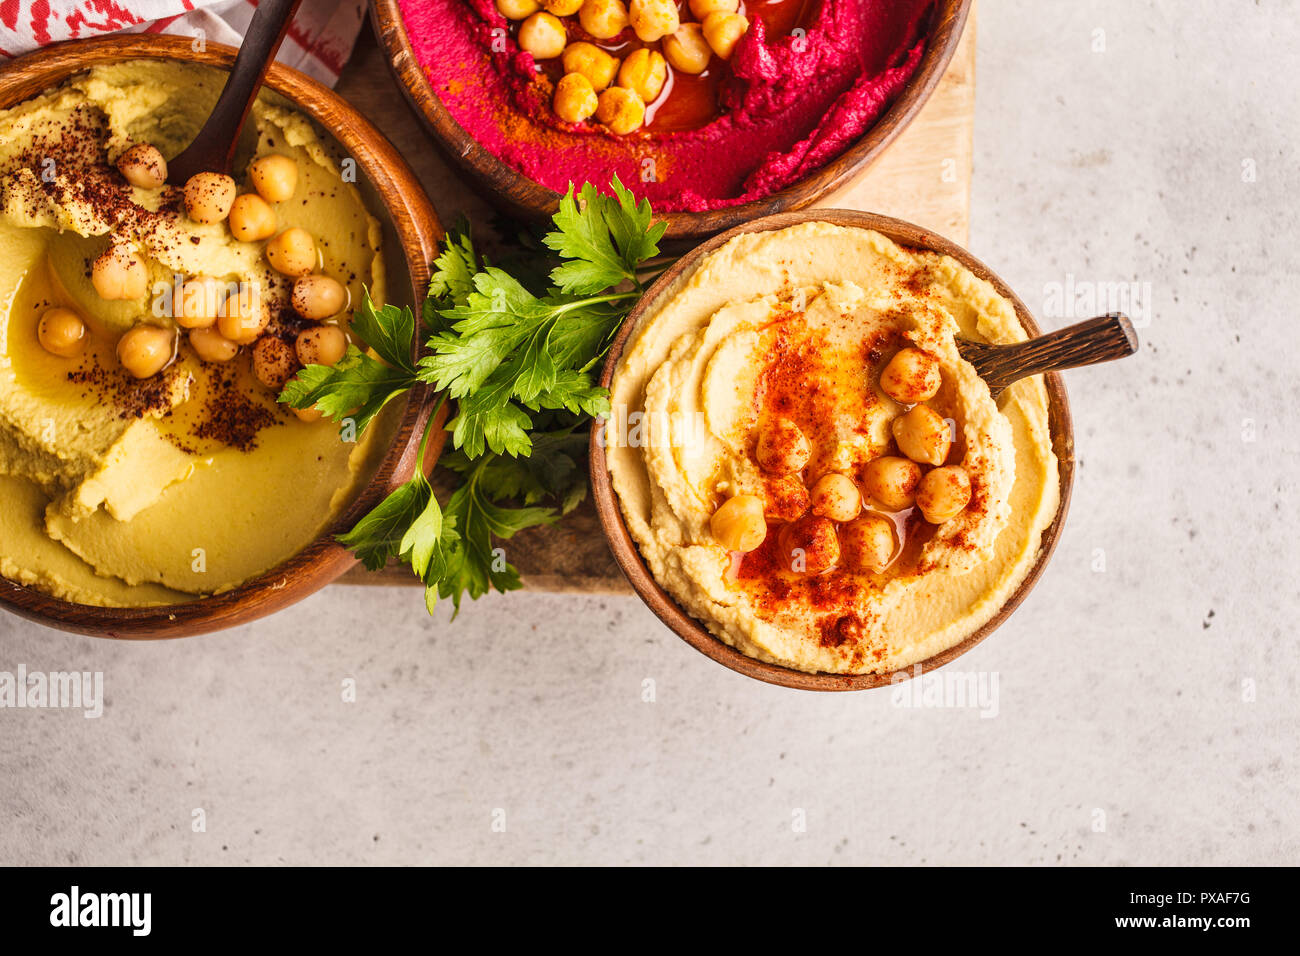 Verschiedene hummus Schalen. Kichererbse Hummus, Avocado-, Hummus und Zuckerrüben Hummus. Auf Basis pflanzlicher Ernährung Lebensmittel. Stockfoto